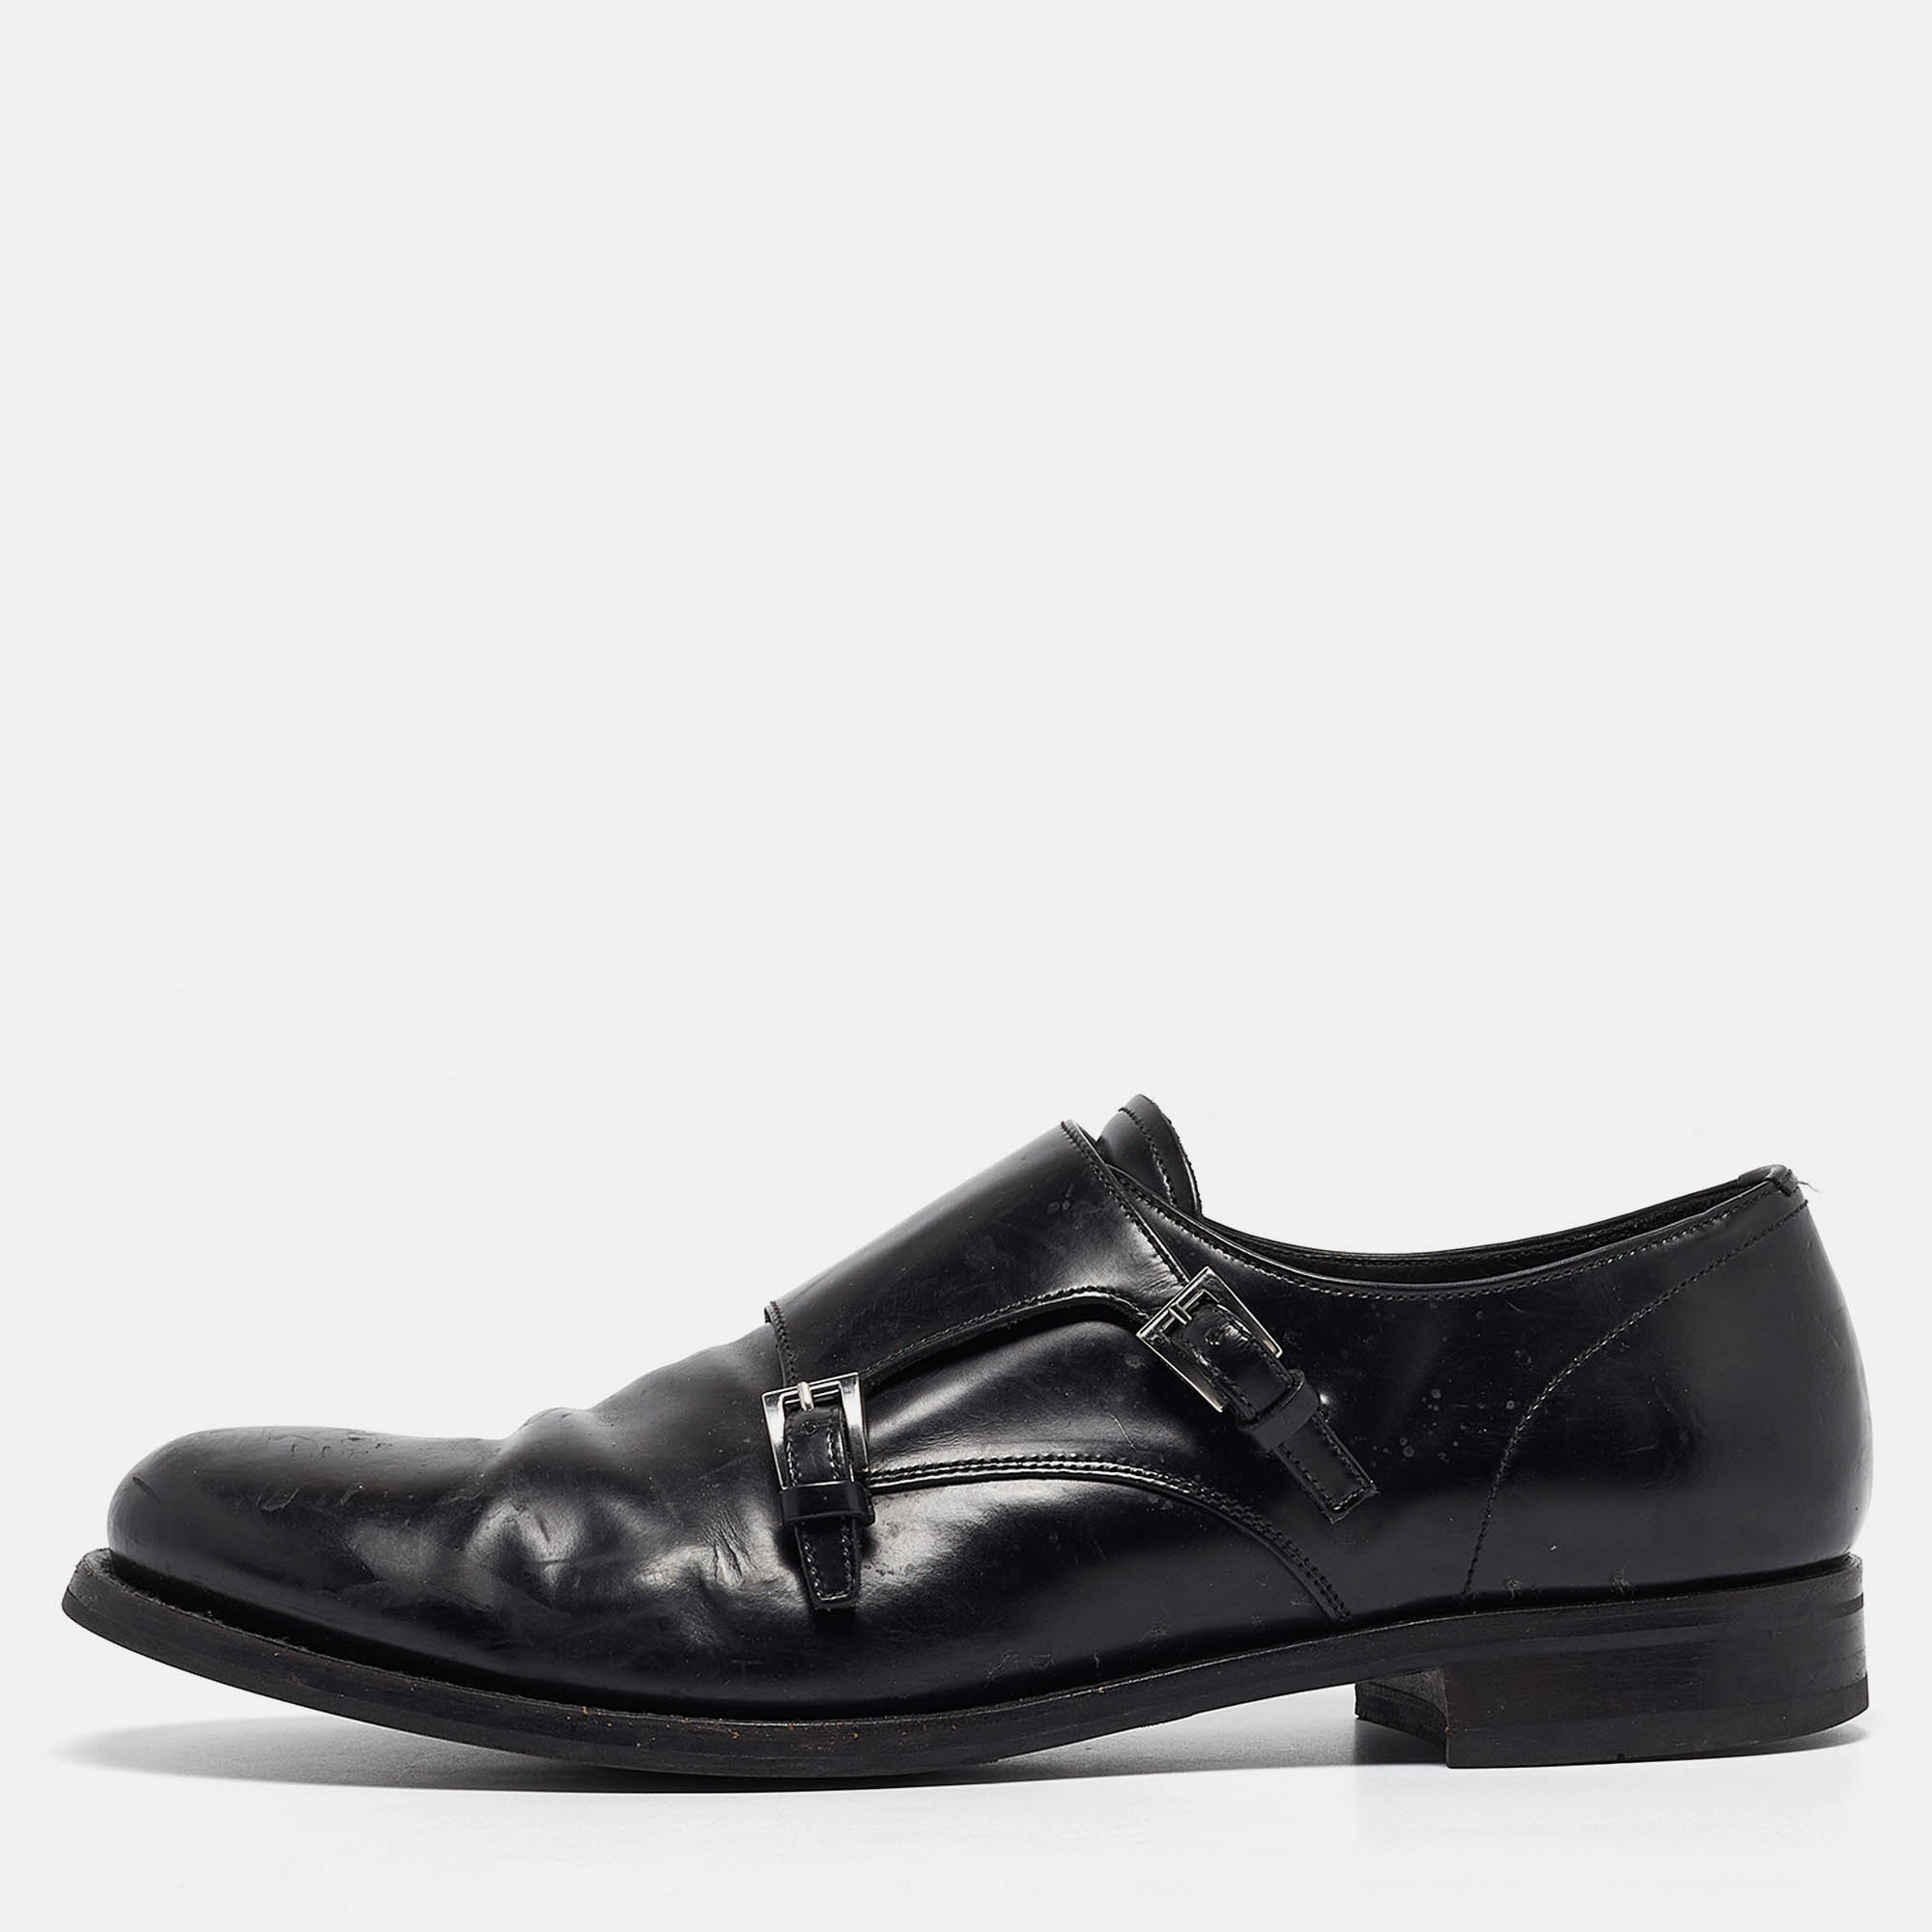 

Prada Black Leather Double Monk Oxford Size 44